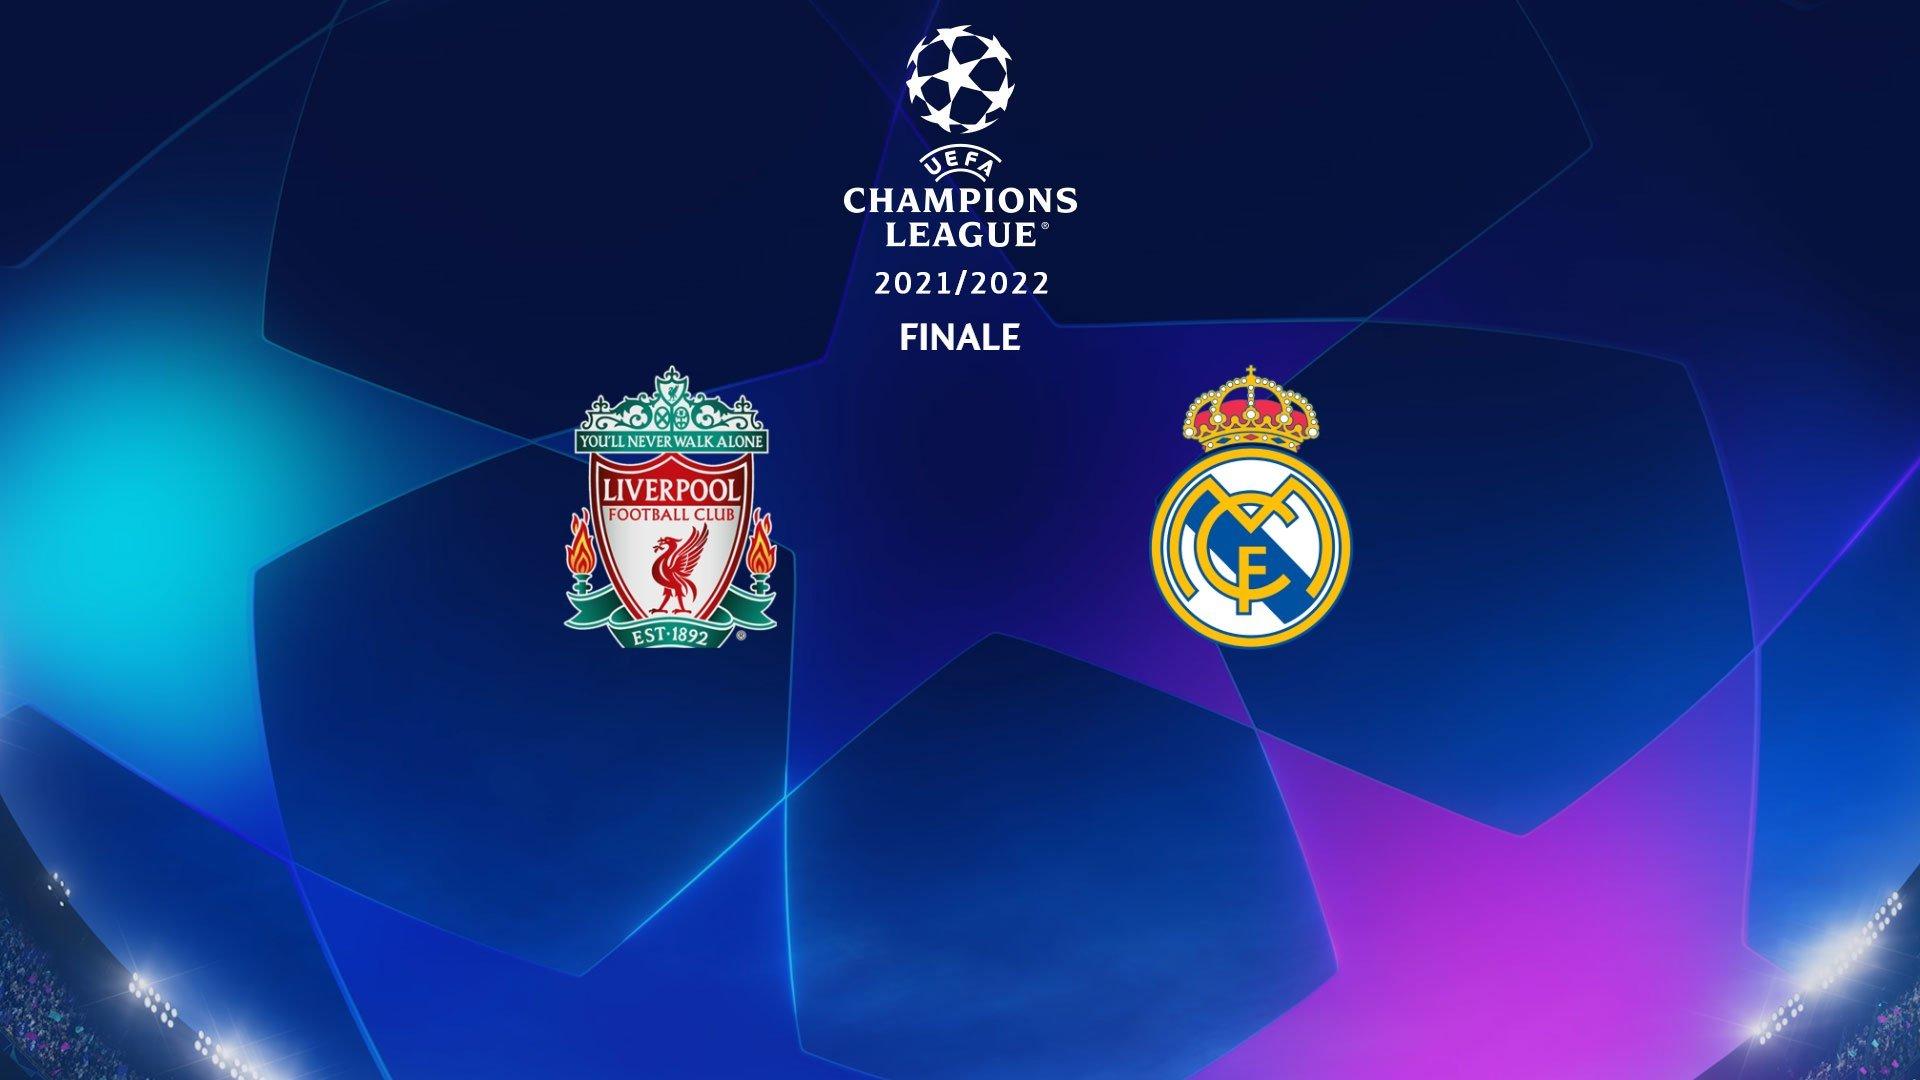 Liverpool - Real Madrid 28/05/22